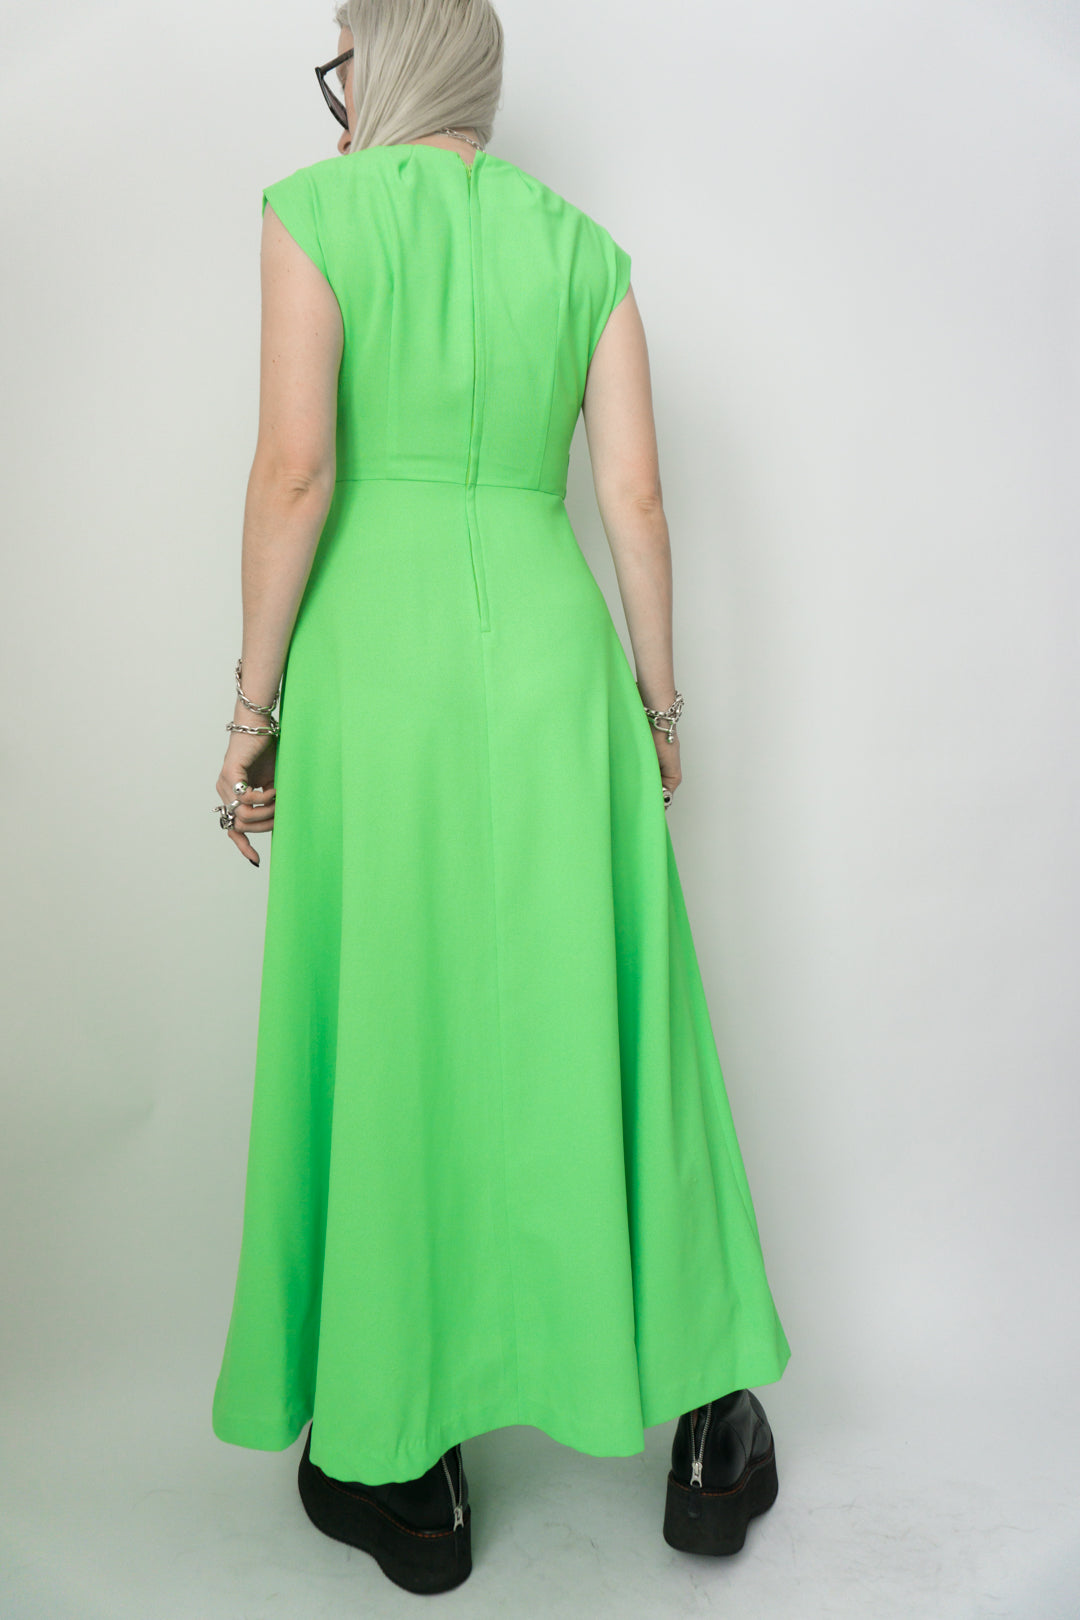 70s Kleid Neongrün